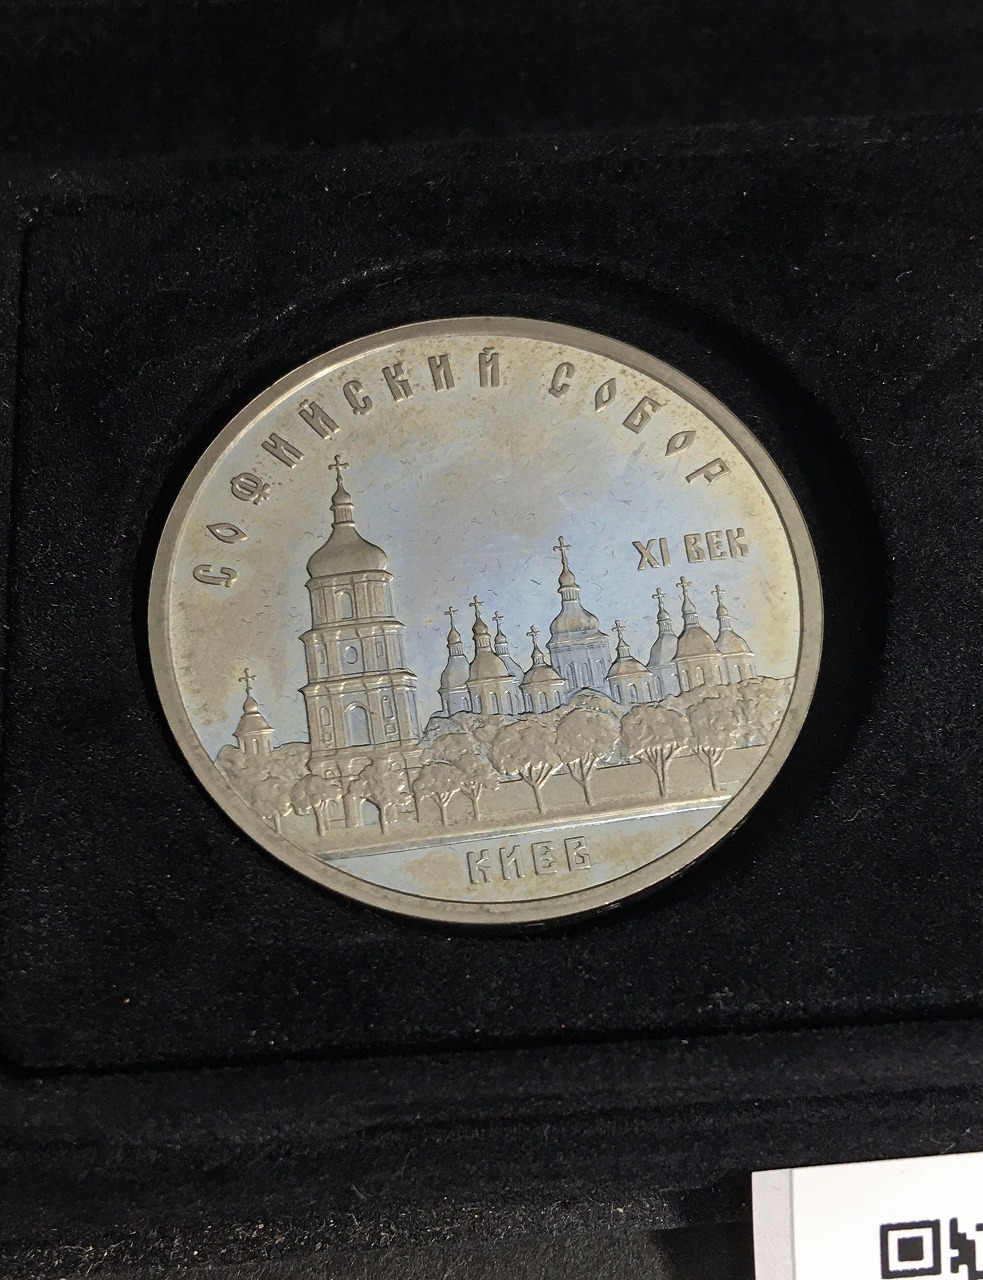 ロシア/旧ソ連 5ルーブル白銅貨/1988年銘/旧ソ連記念コイン3枚セット 未使用 | 収集ワールド